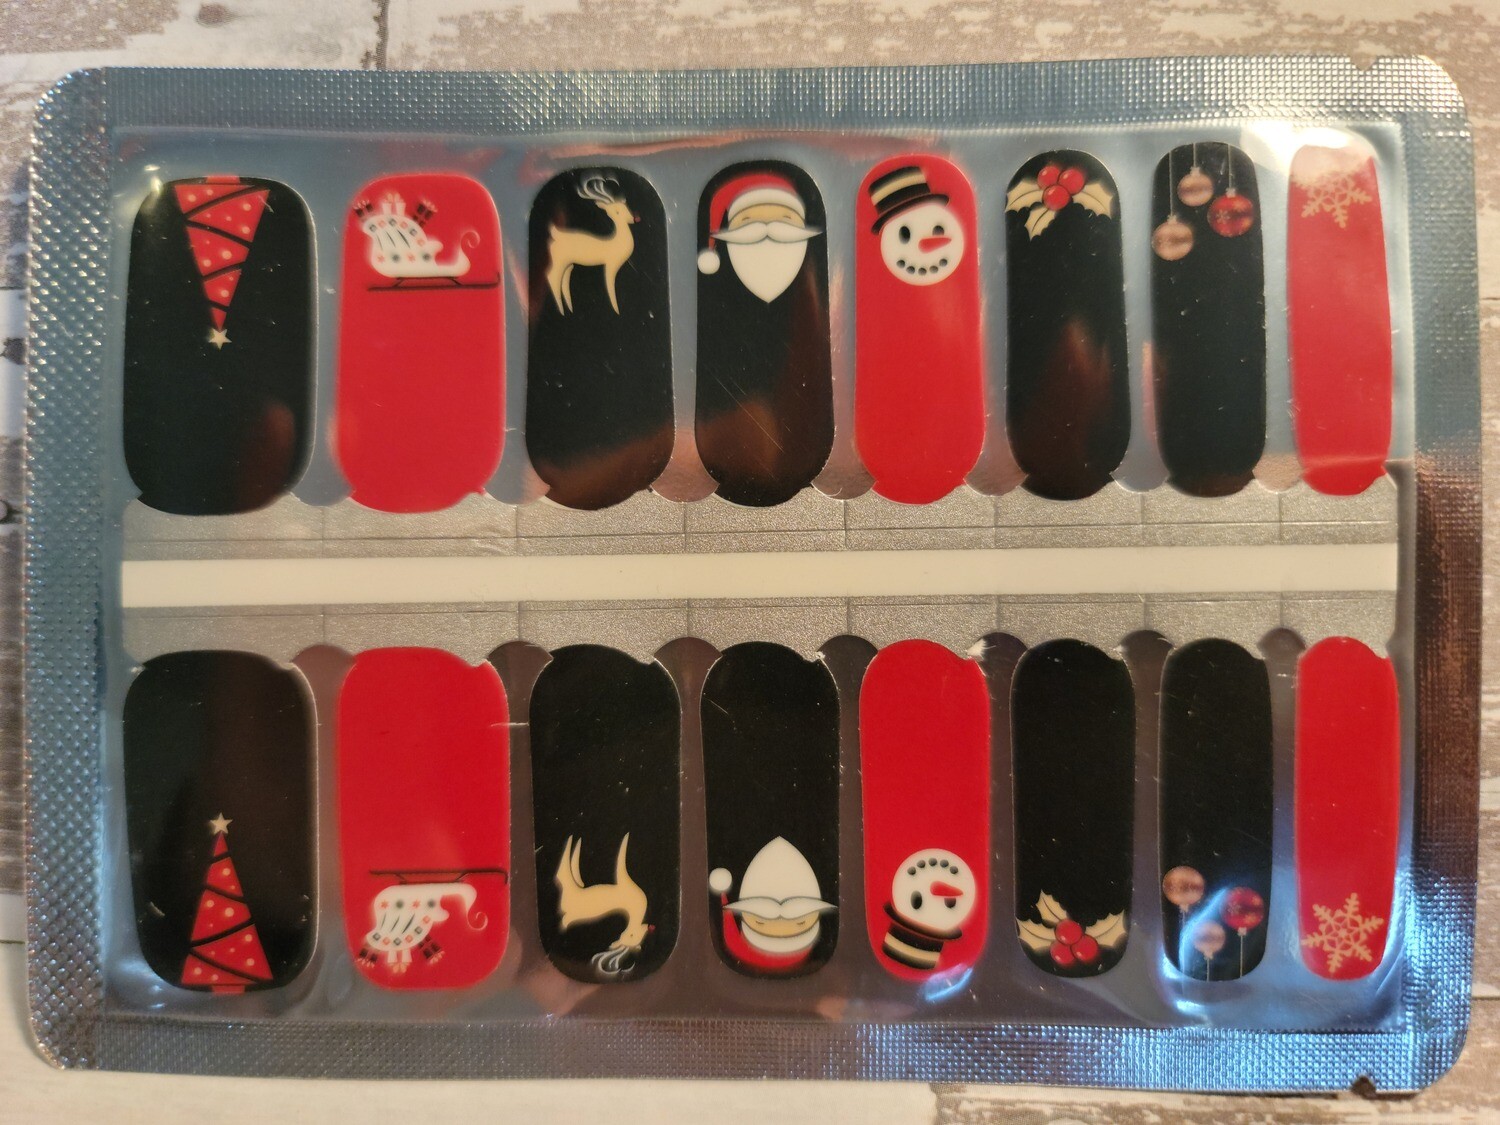 C106- Red and Black Santa, Snowman, Snowflake, Reindeer